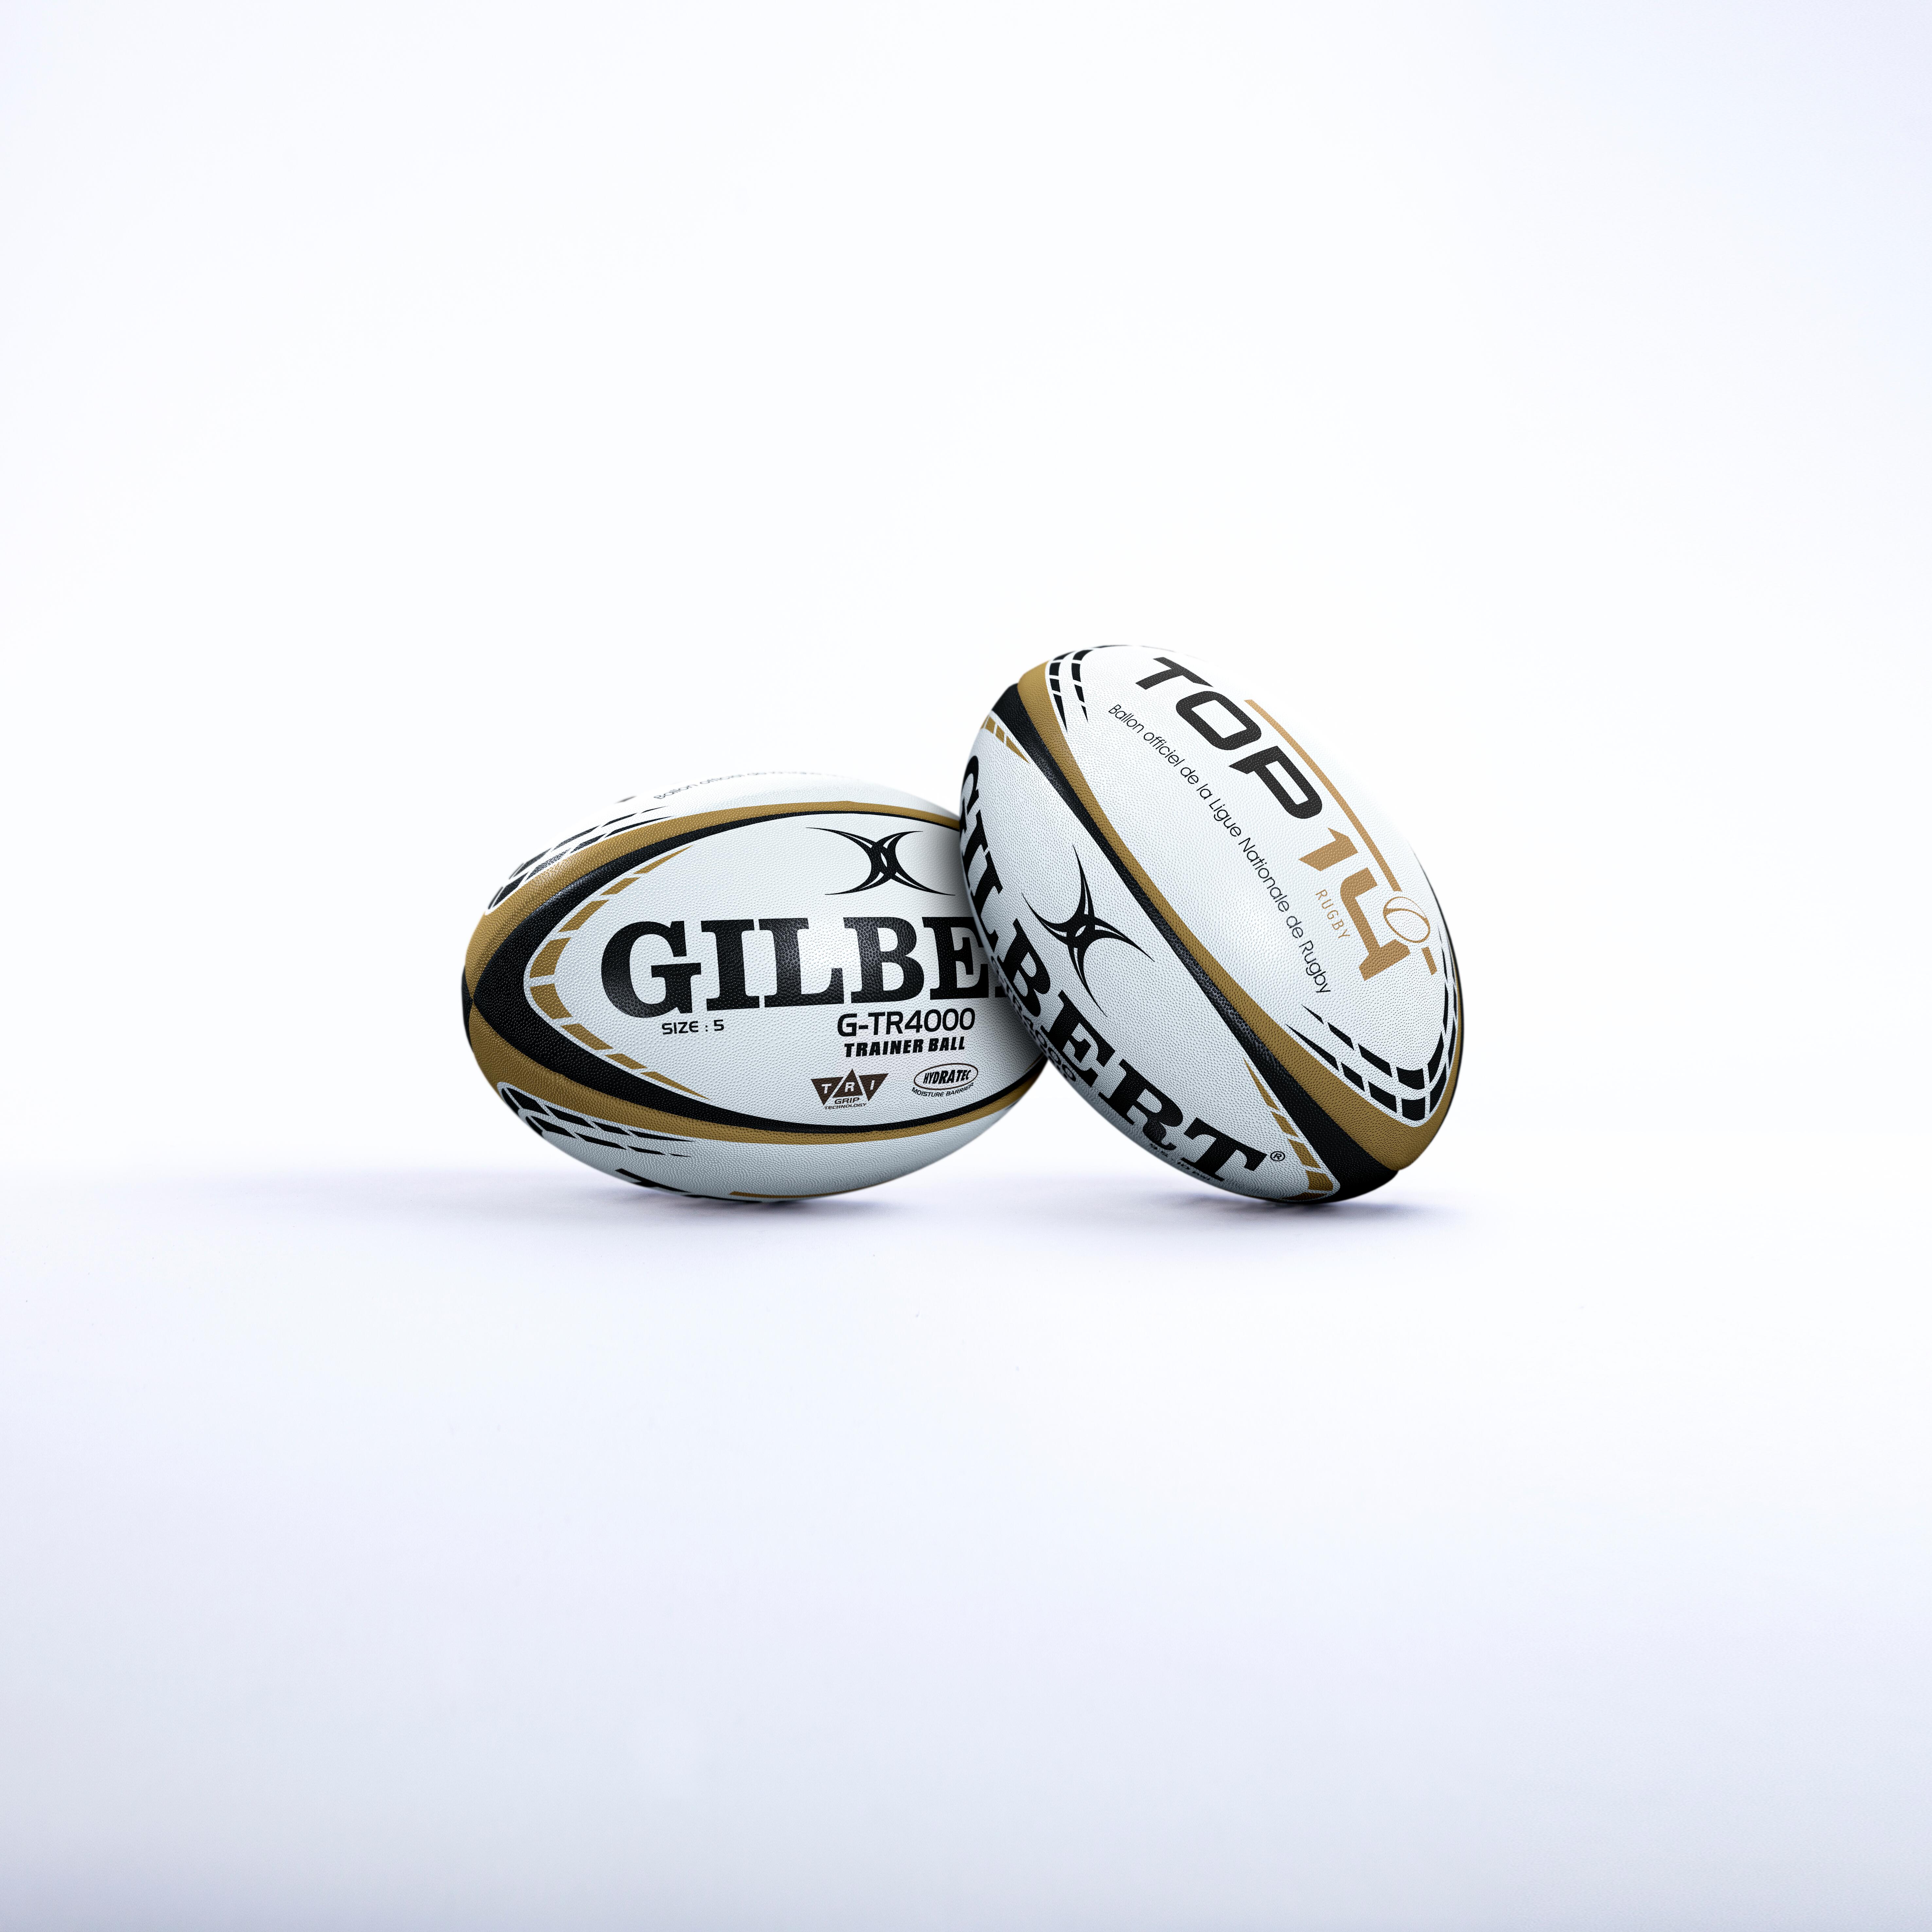 Minge Rugby GILBERT TOP 14 mărimea 5 alb-auriu Accesorii imagine 2022